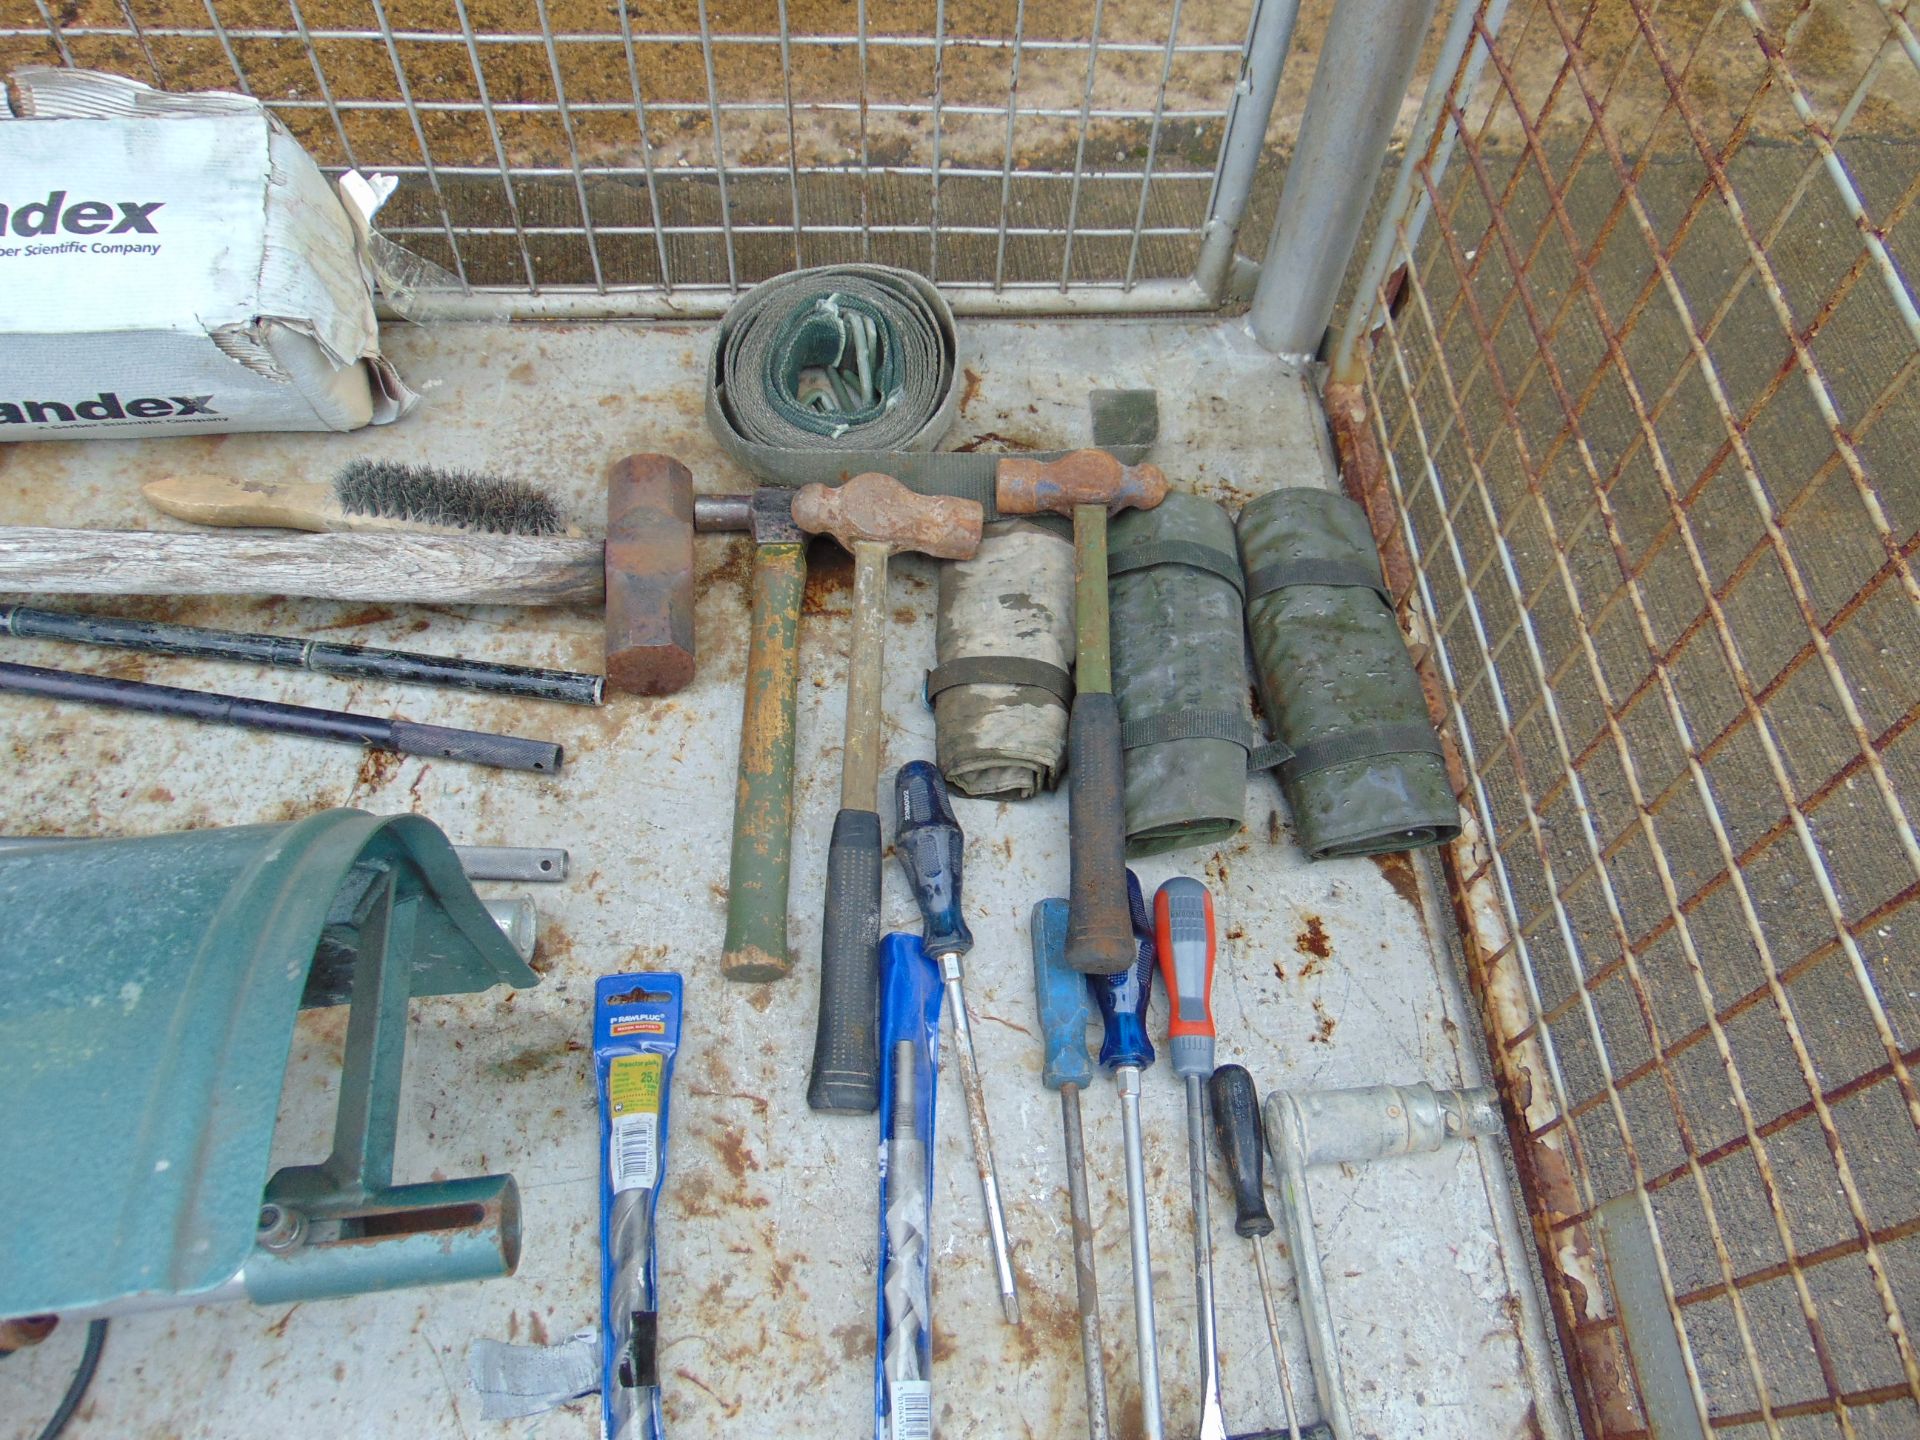 1x Stillage of Workshop Tools inc Grinder, Torque Wrench etc - Image 9 of 9